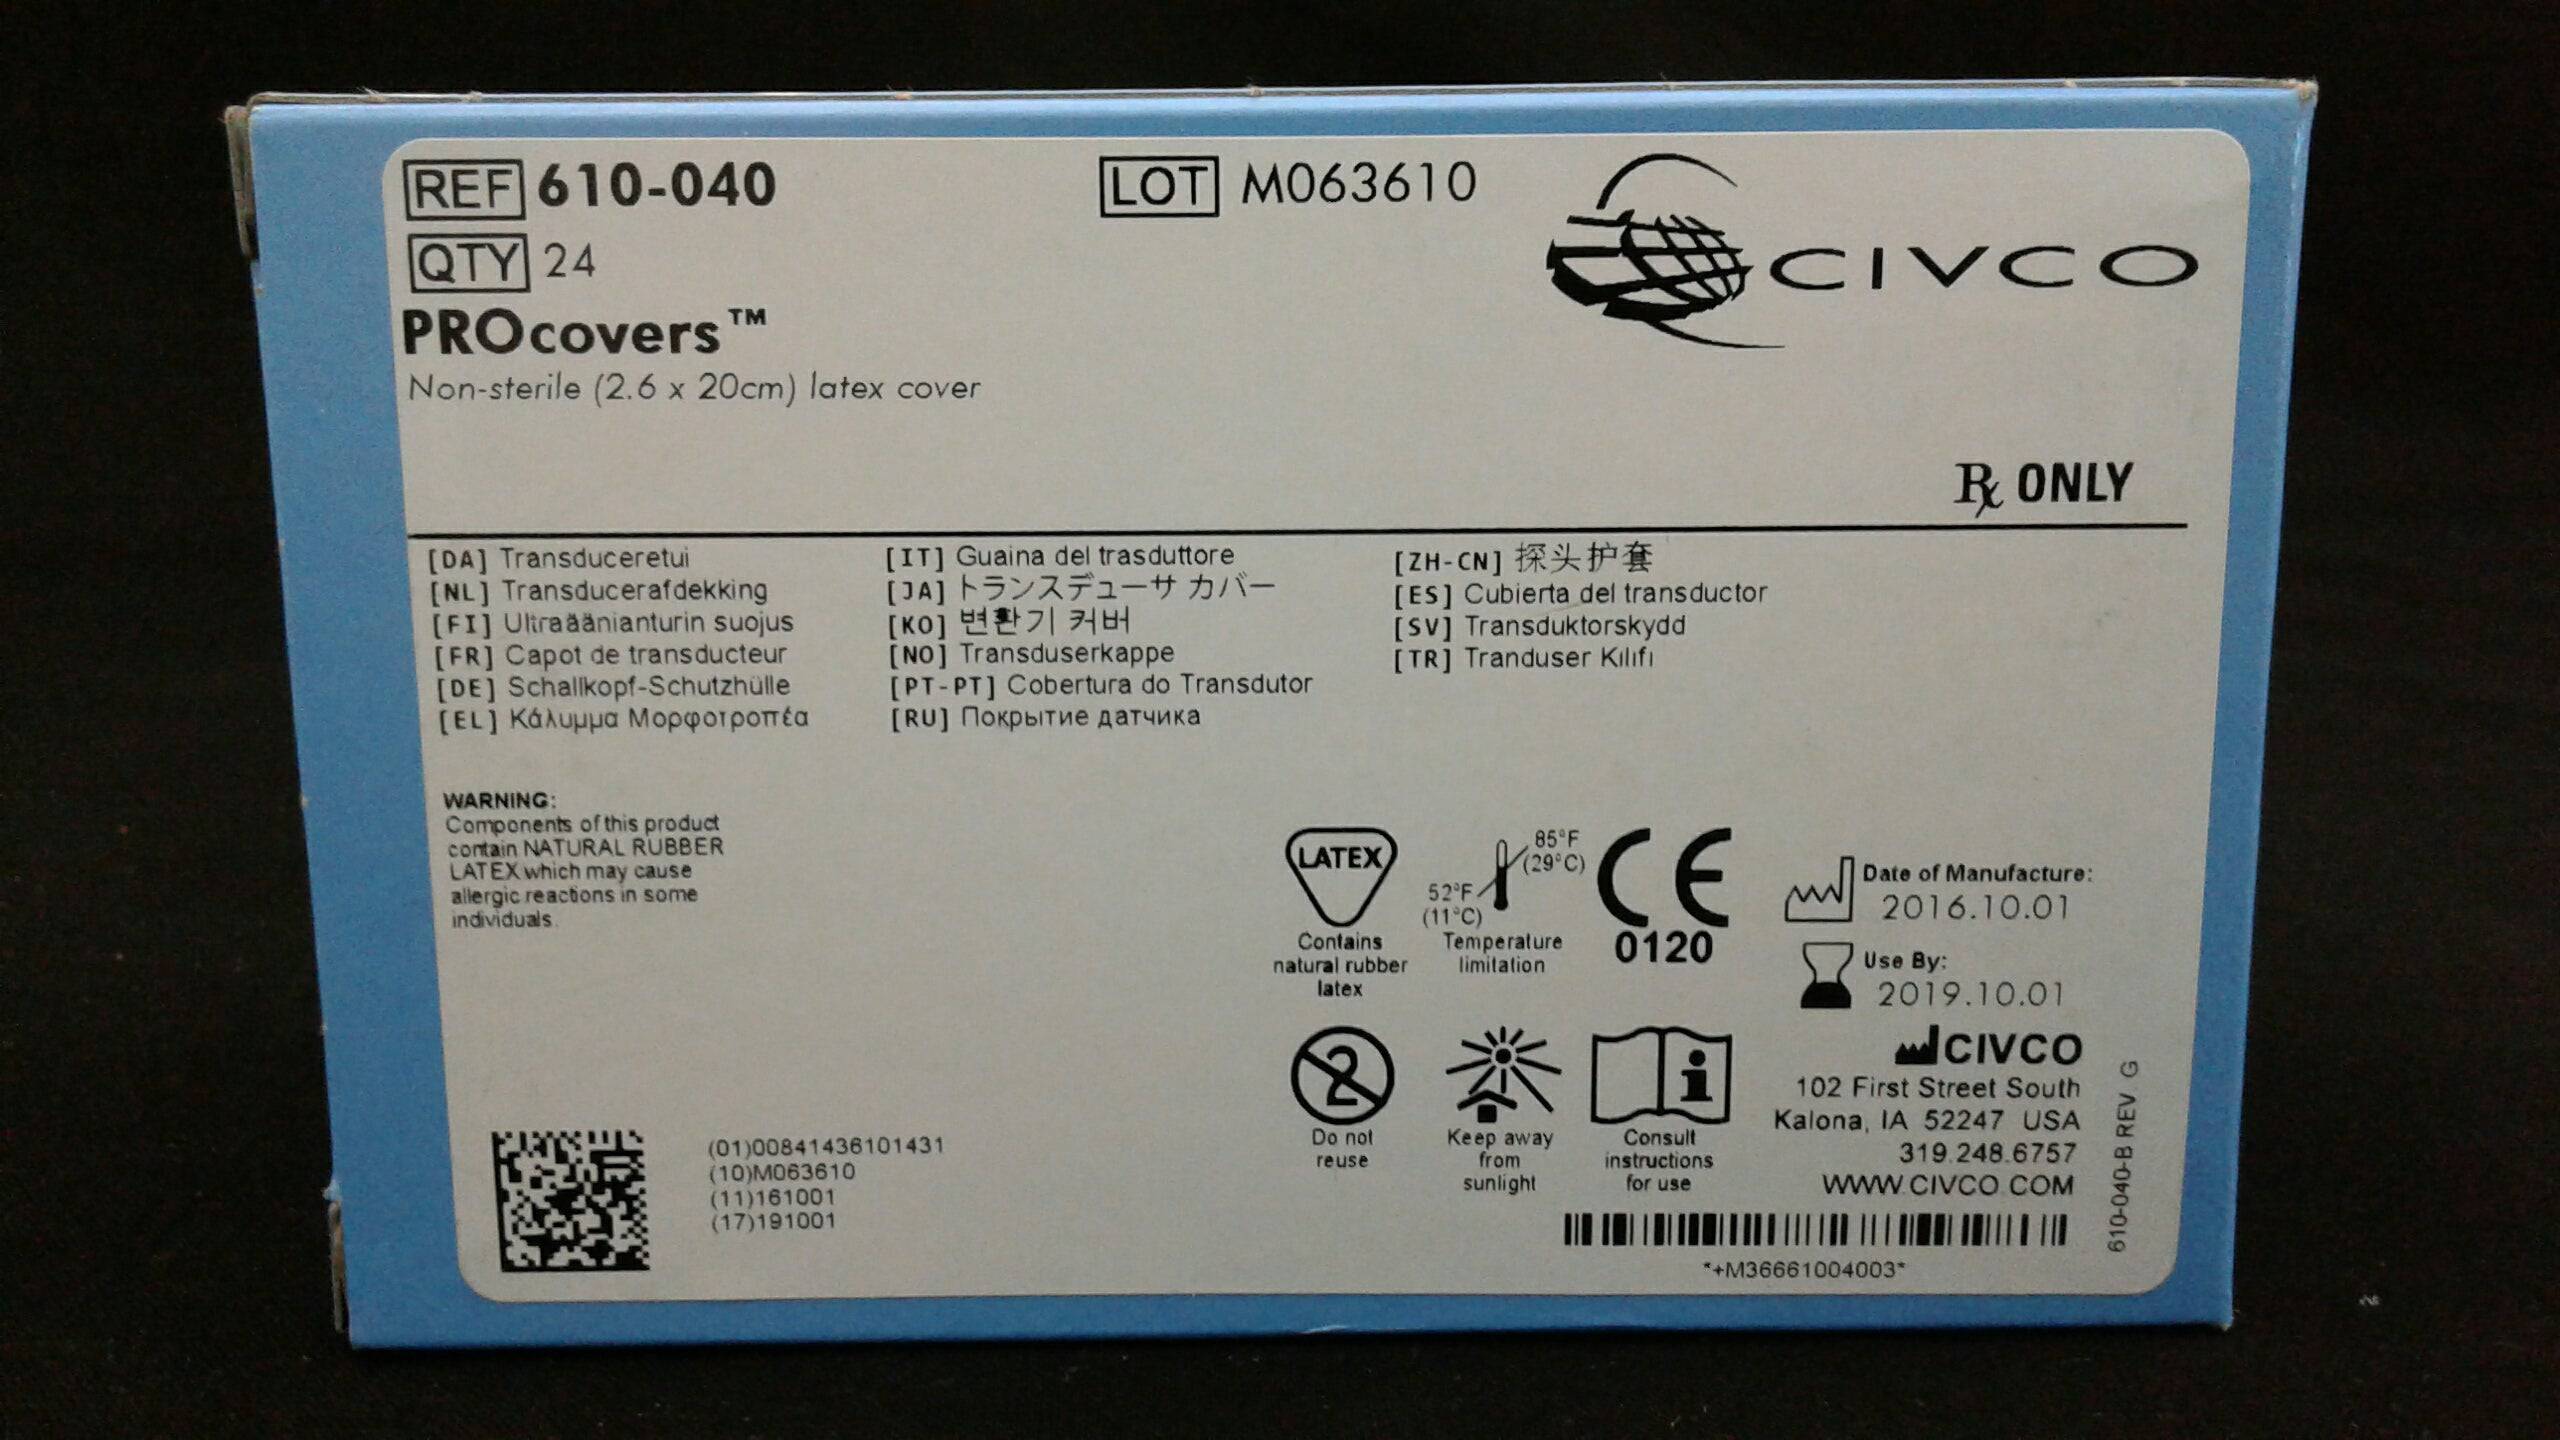 CIVCO  610-040 NON-STERILE 2.6X20CM LATEX COVER